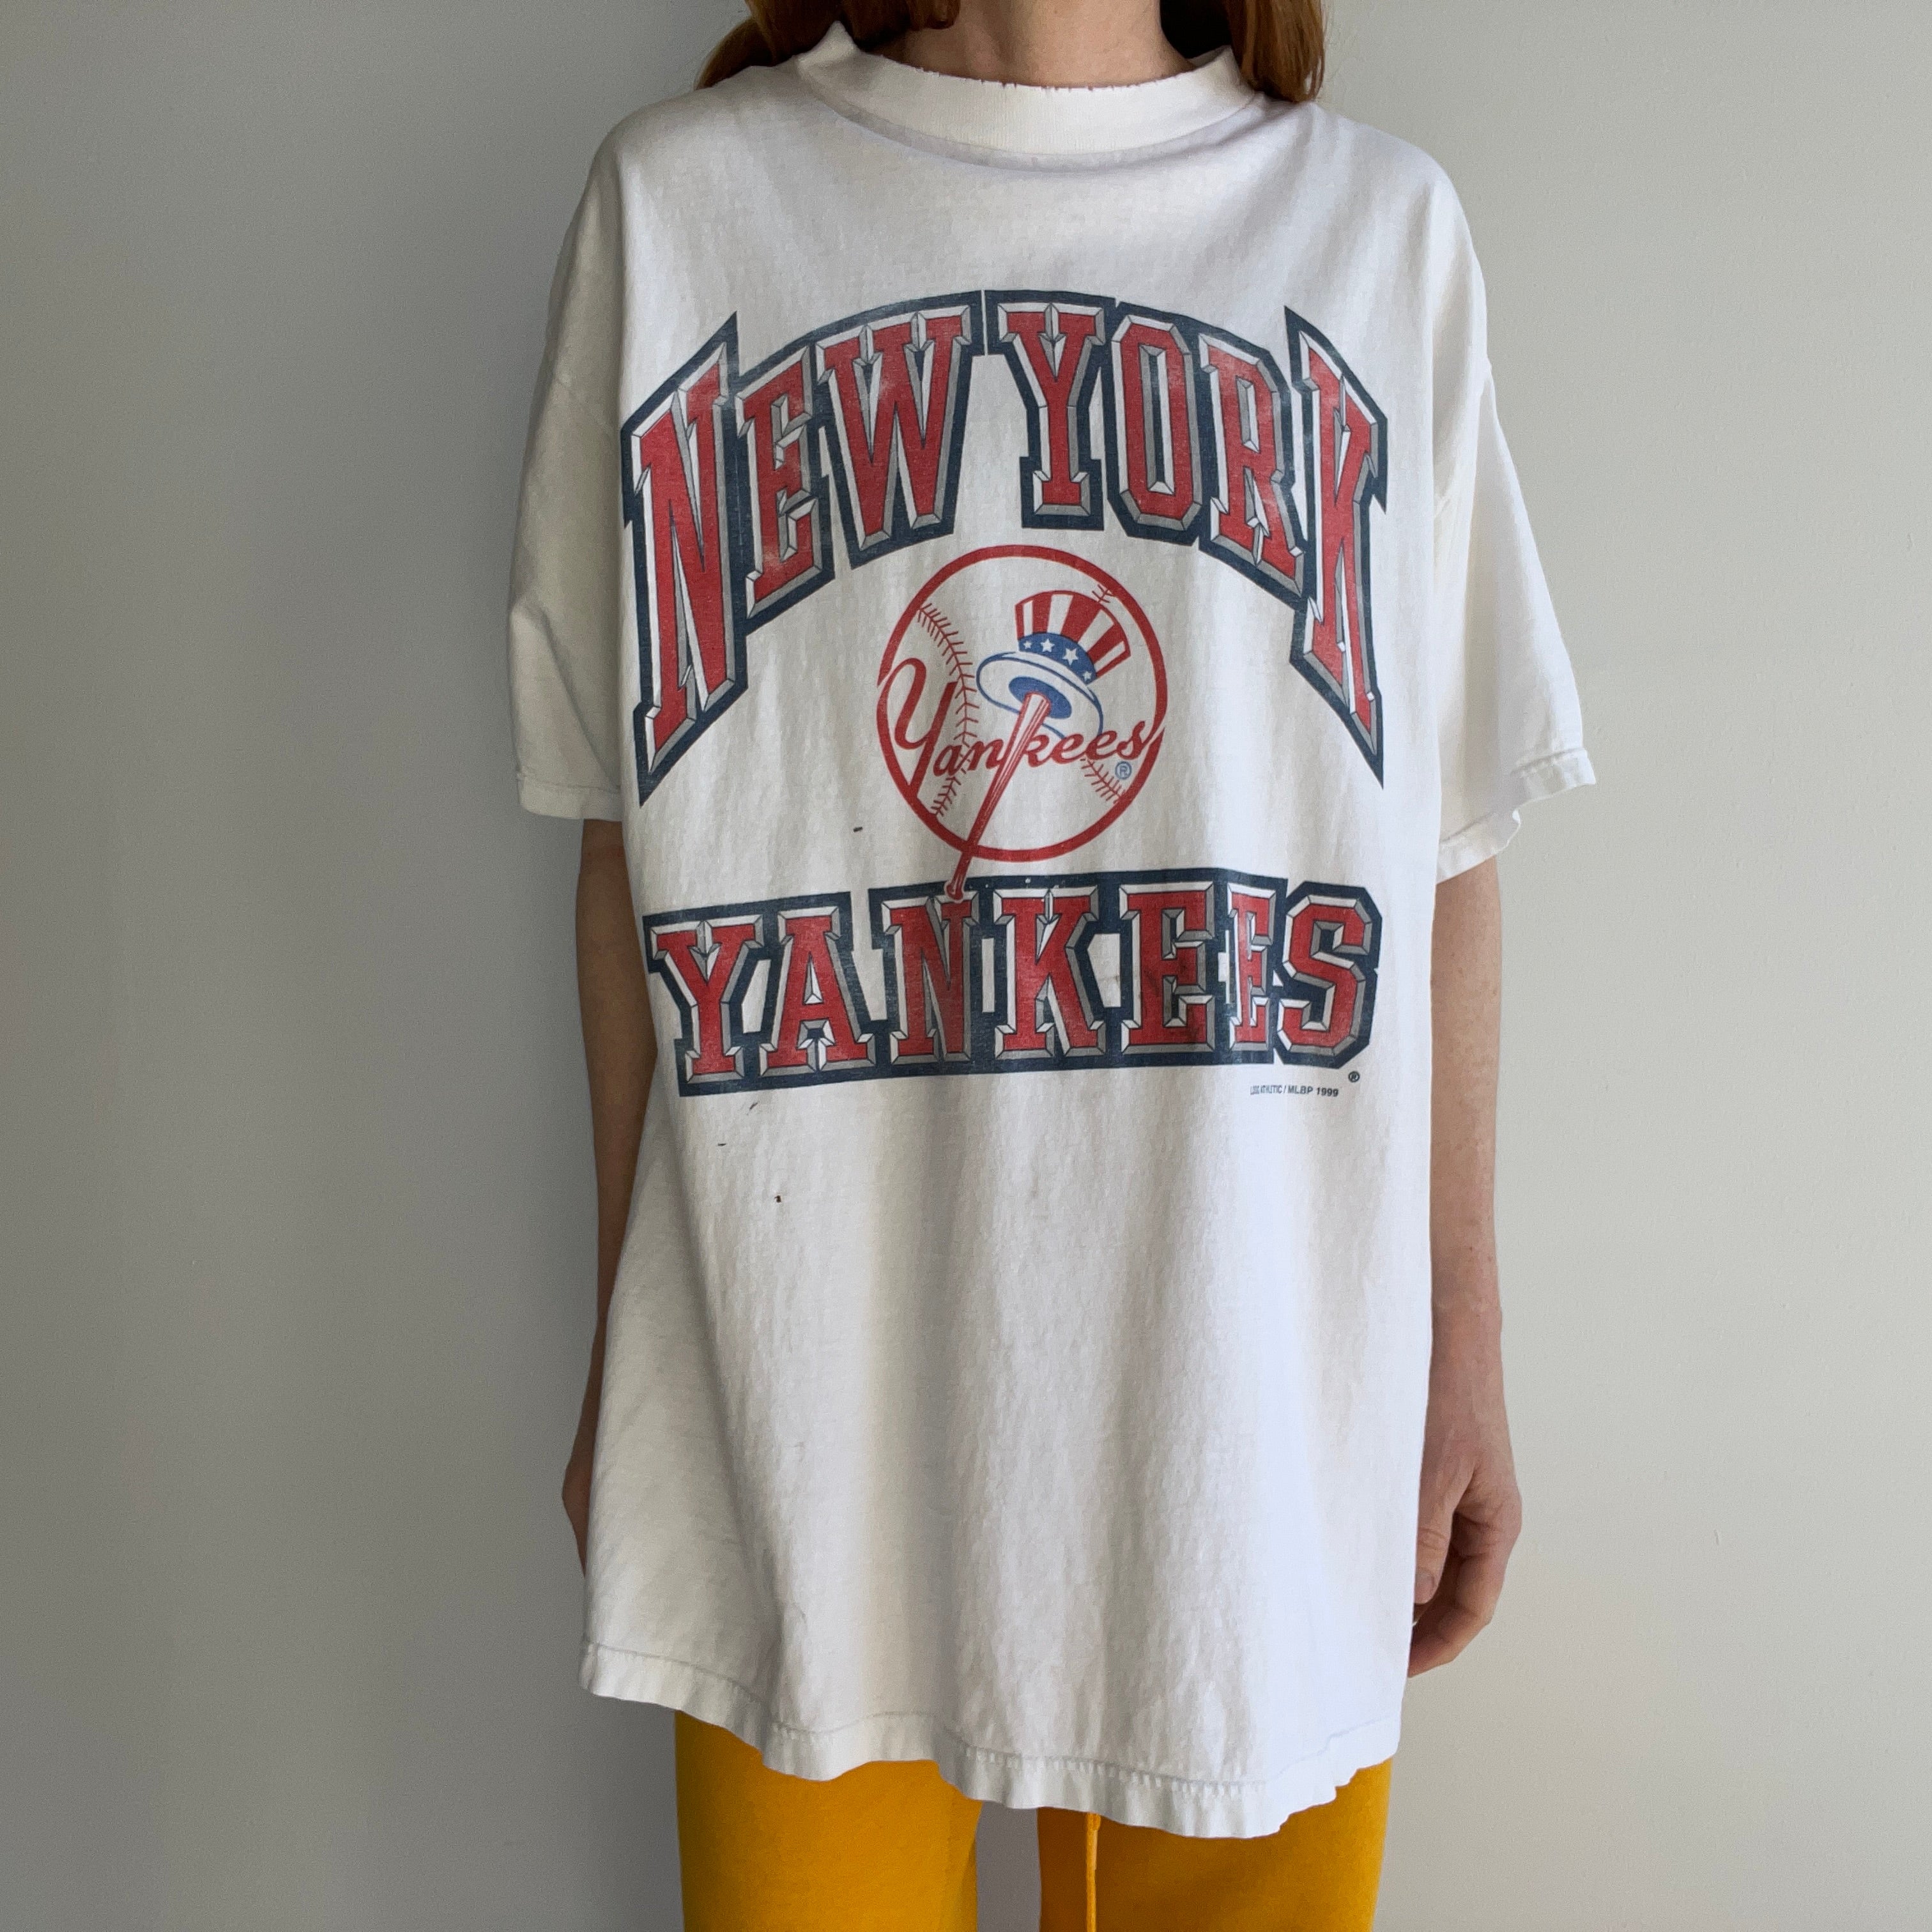 1999 New York Yankees Tattered and Worn T-Shirt